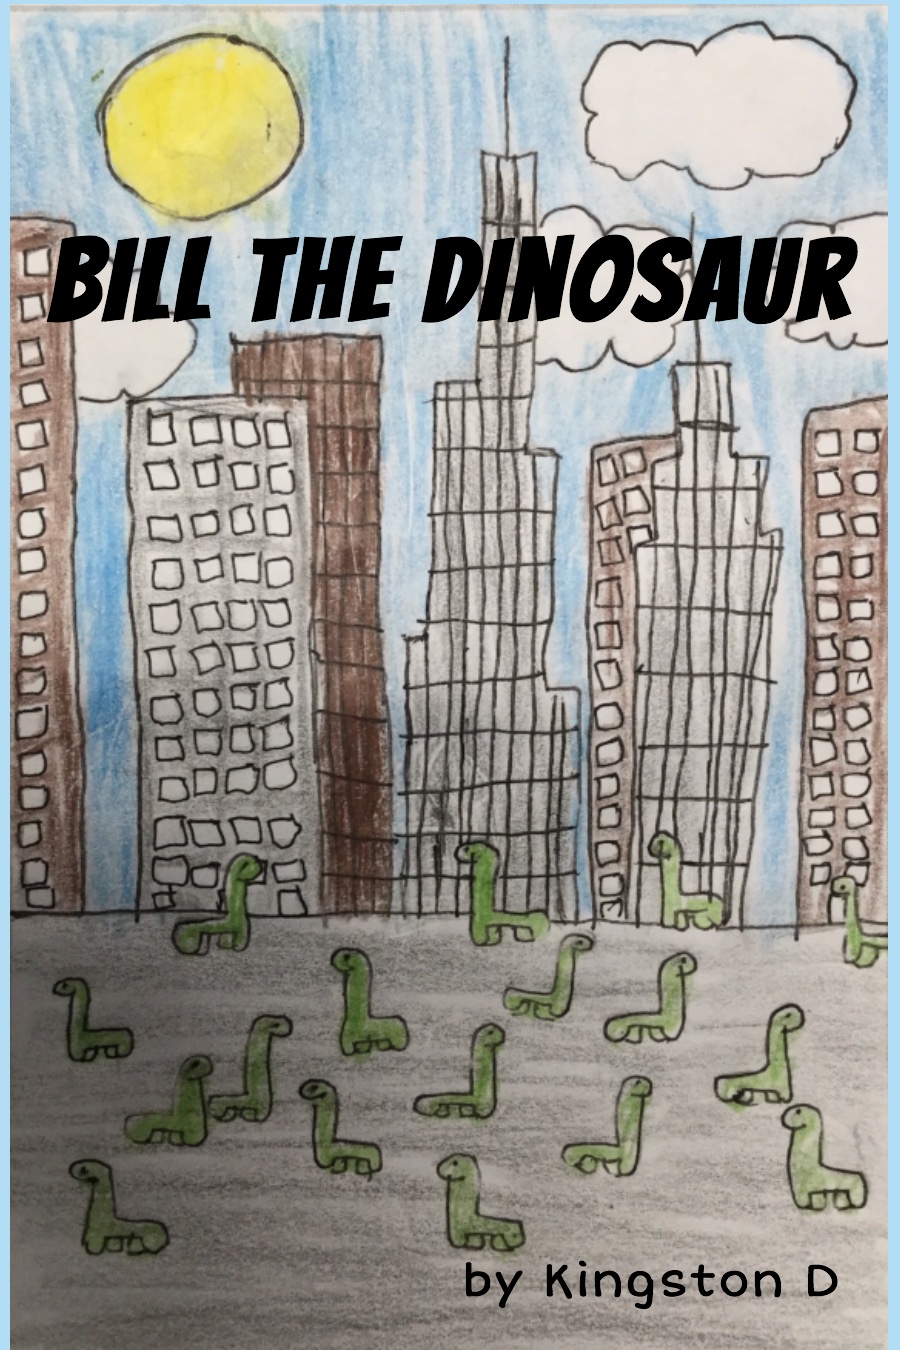 Bill the Dinosaur by Kingston D